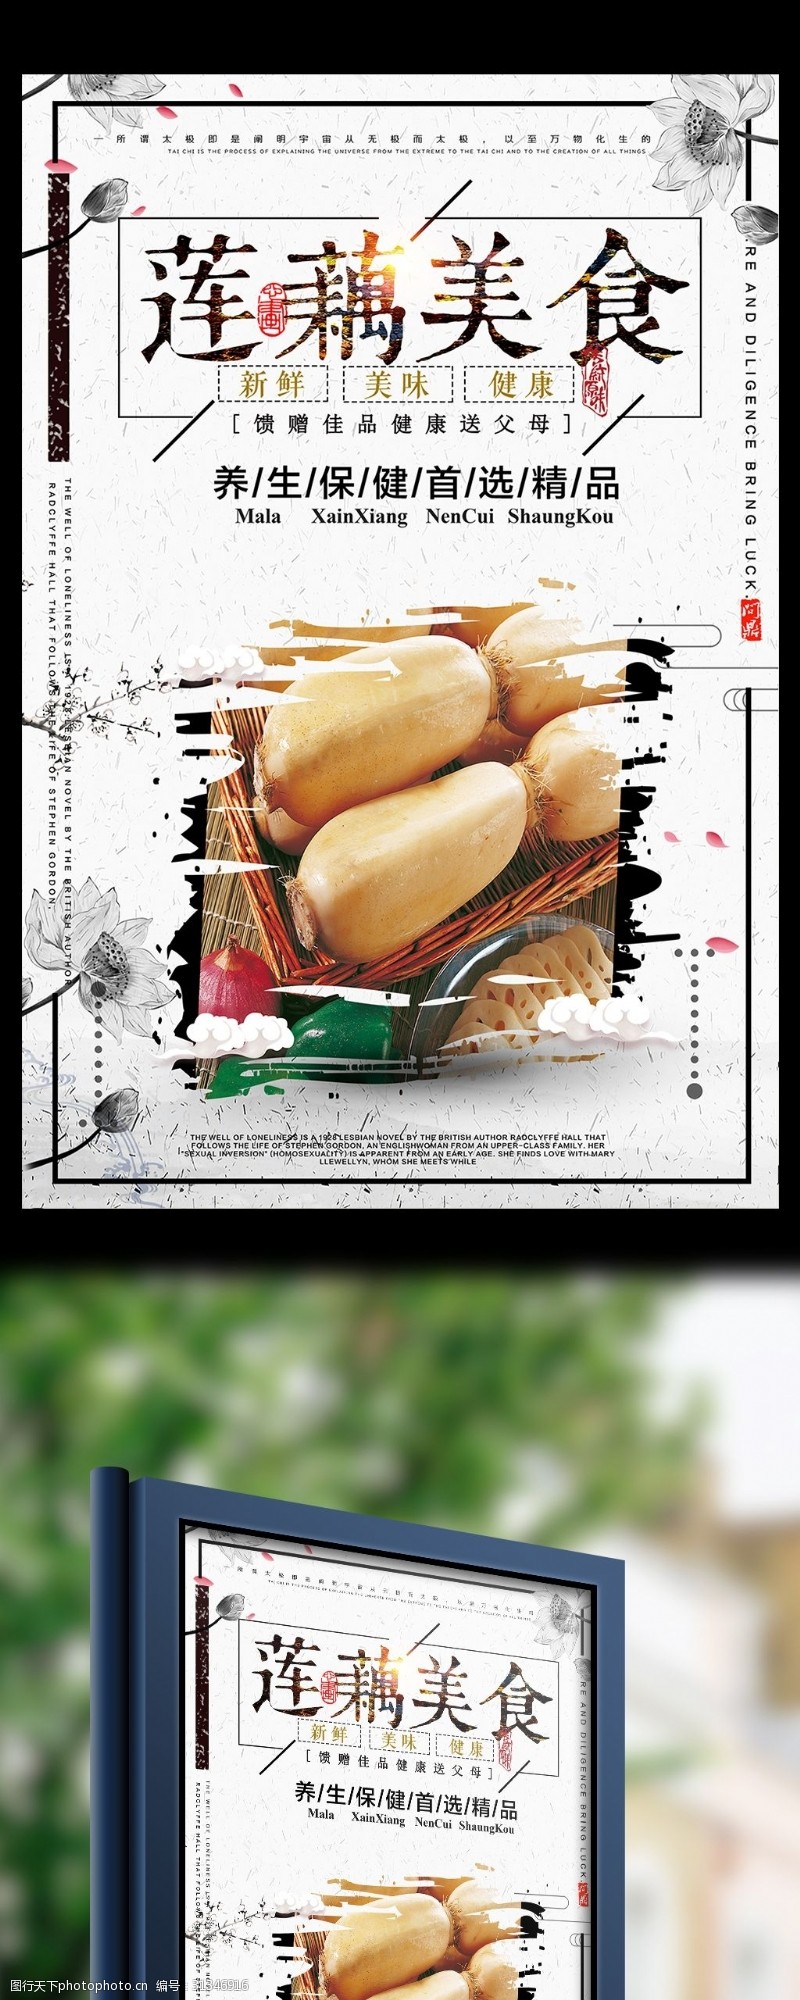 海鲜模板下载中国风莲藕设计海报模板